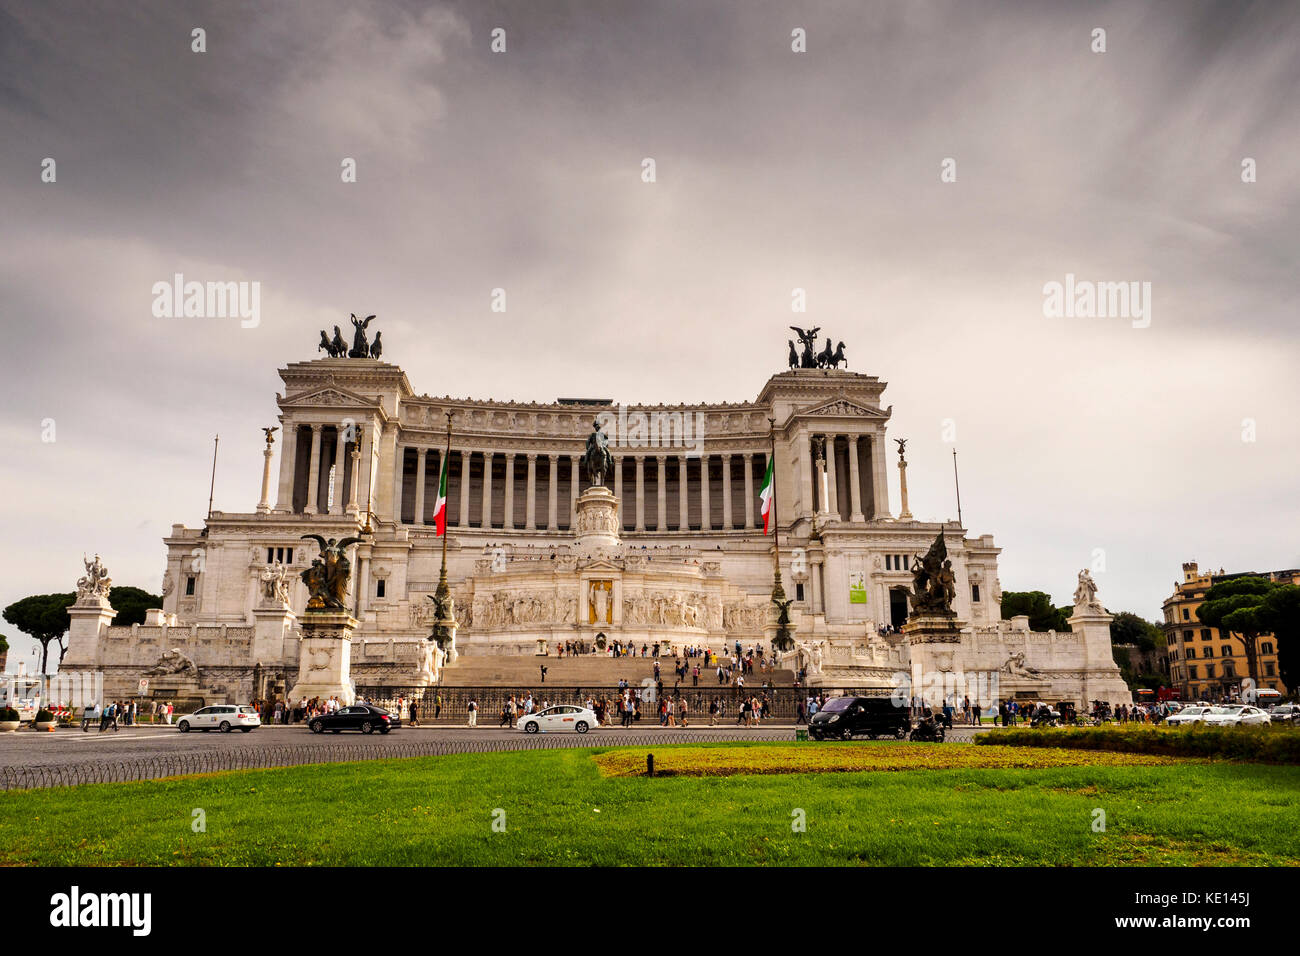 the 'Vittoriano' monument or Altare della Patria (Fatherland Altar) - Rome Italy Stock Photo